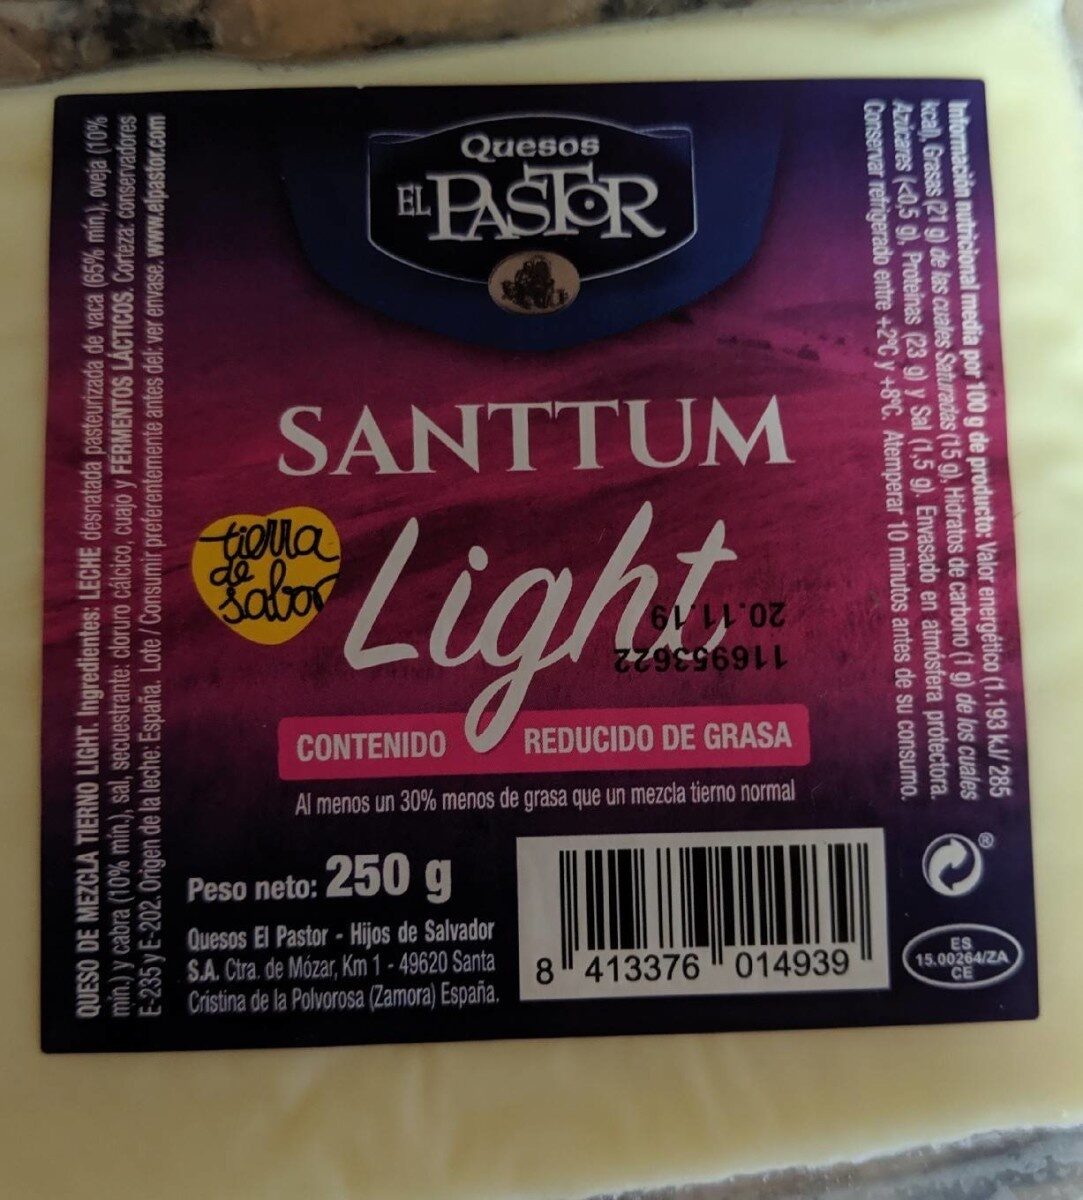 Santtum - Queso light - Product - es